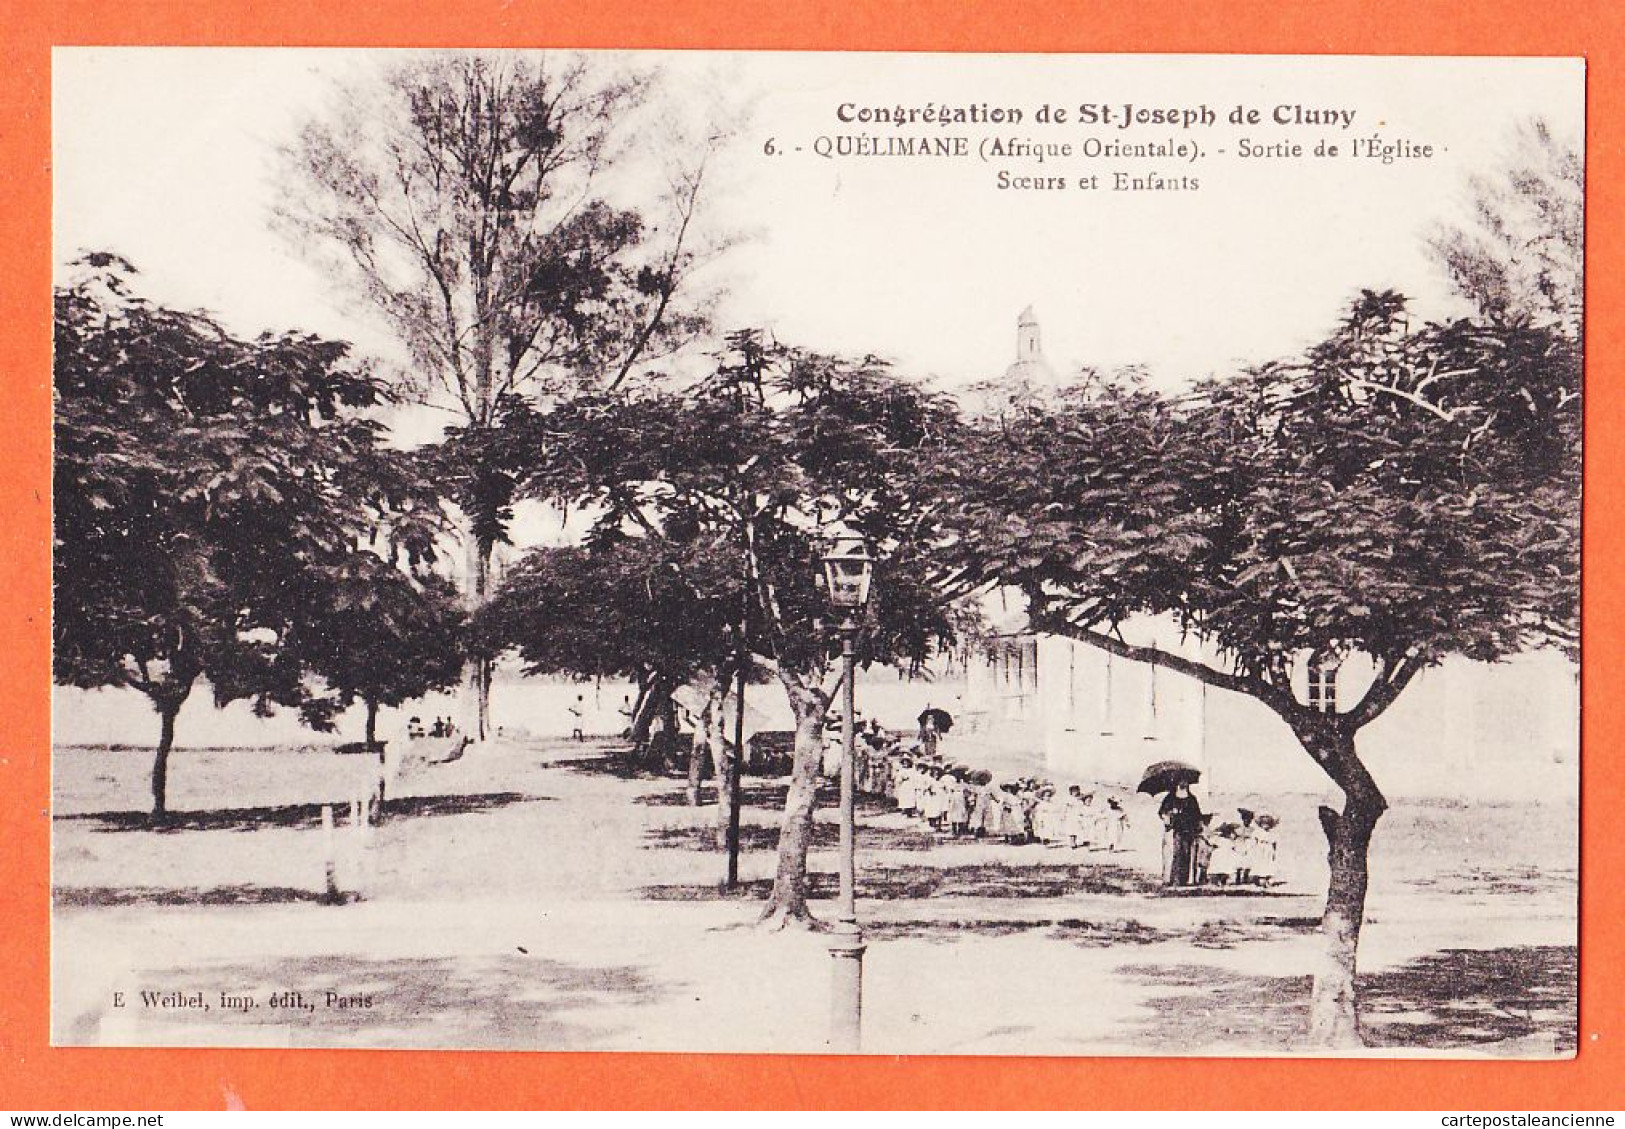 08010 ● QUELIMANE Mozambique Sortie Eglise Soeurs Congrégation SAINT-JOSEPH CLUNY 1925- WEIBEL 6 St - Mozambico